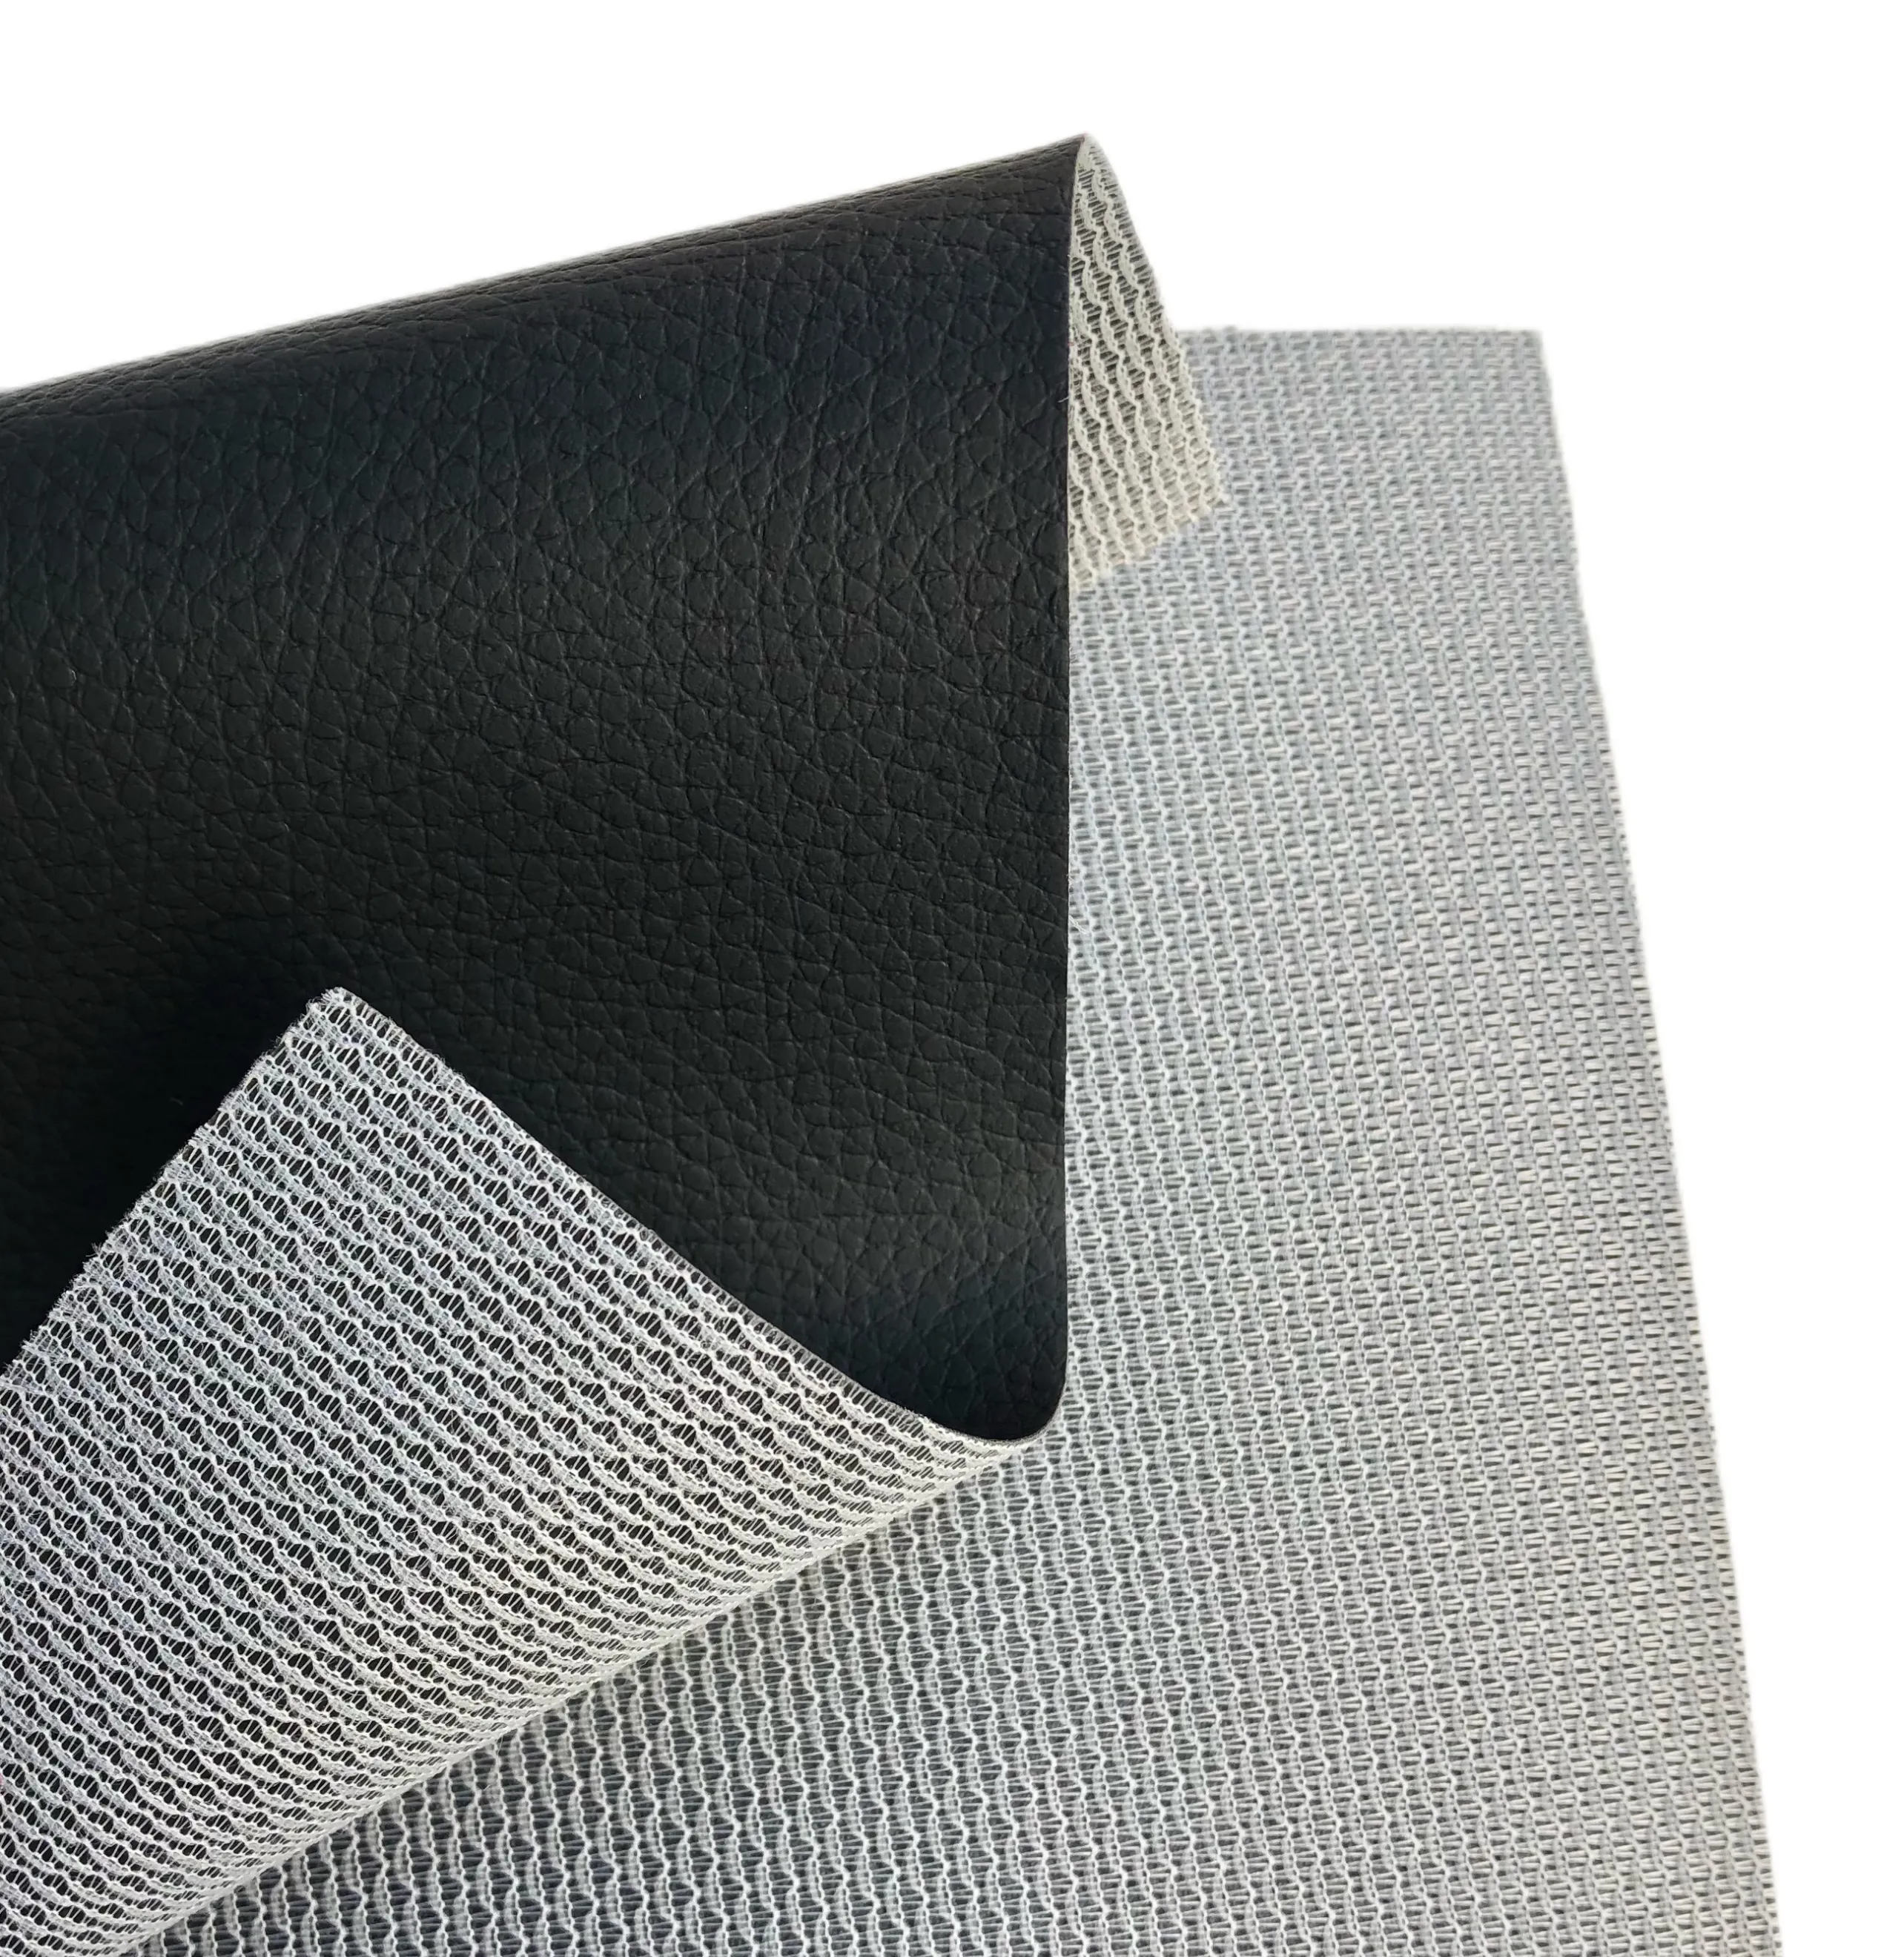 Hotsale جلد صناعي من البولي فينيل كلوريد ل أريكة مقعد السيارة upholstory مع رخيصة الثمن Lichee الحبوب 160 سنتيمتر العرض